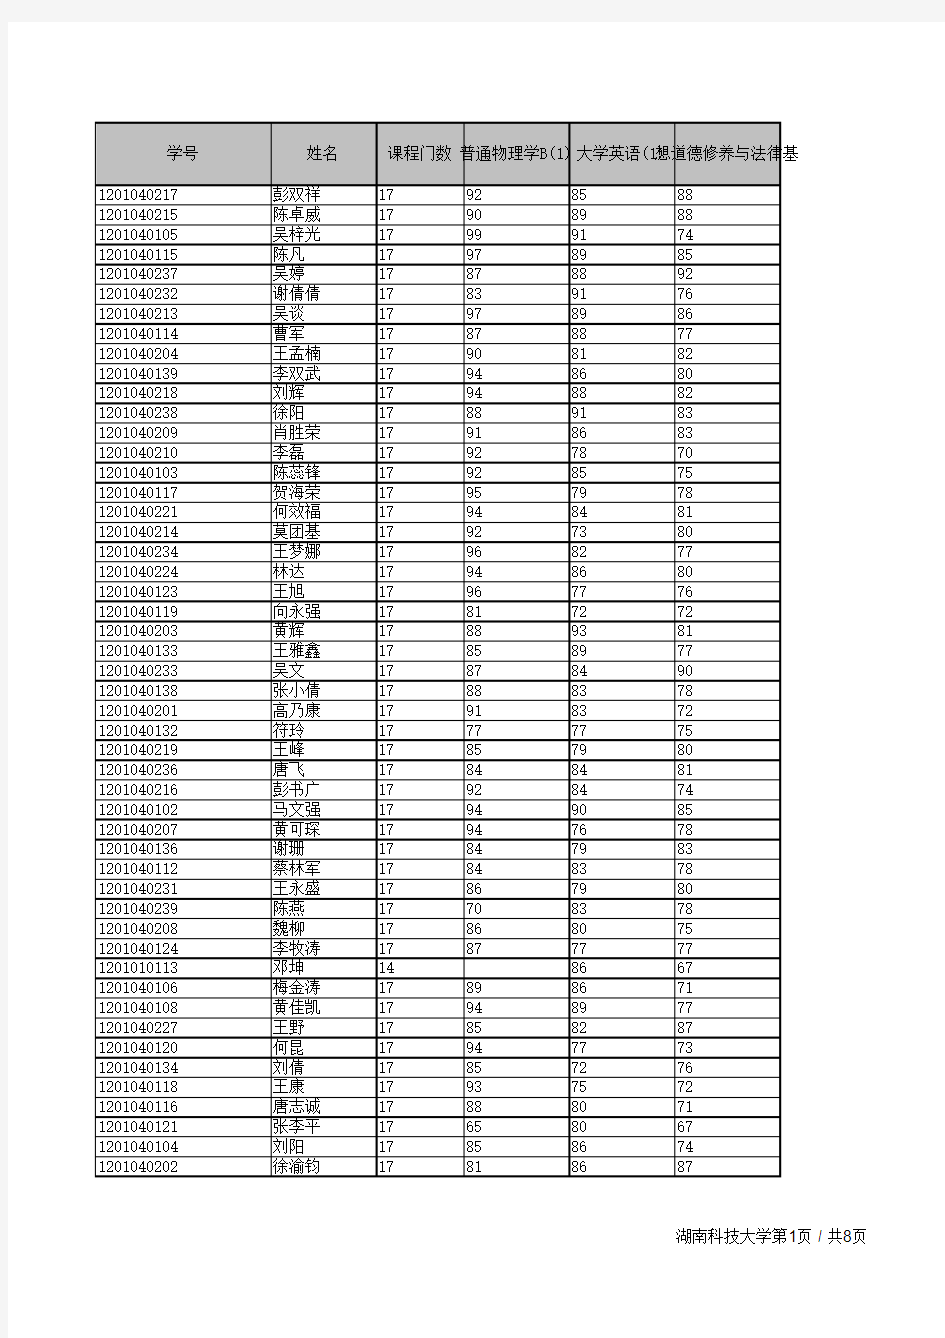 湖南科技大学 专业成绩表  [2012]工业工程